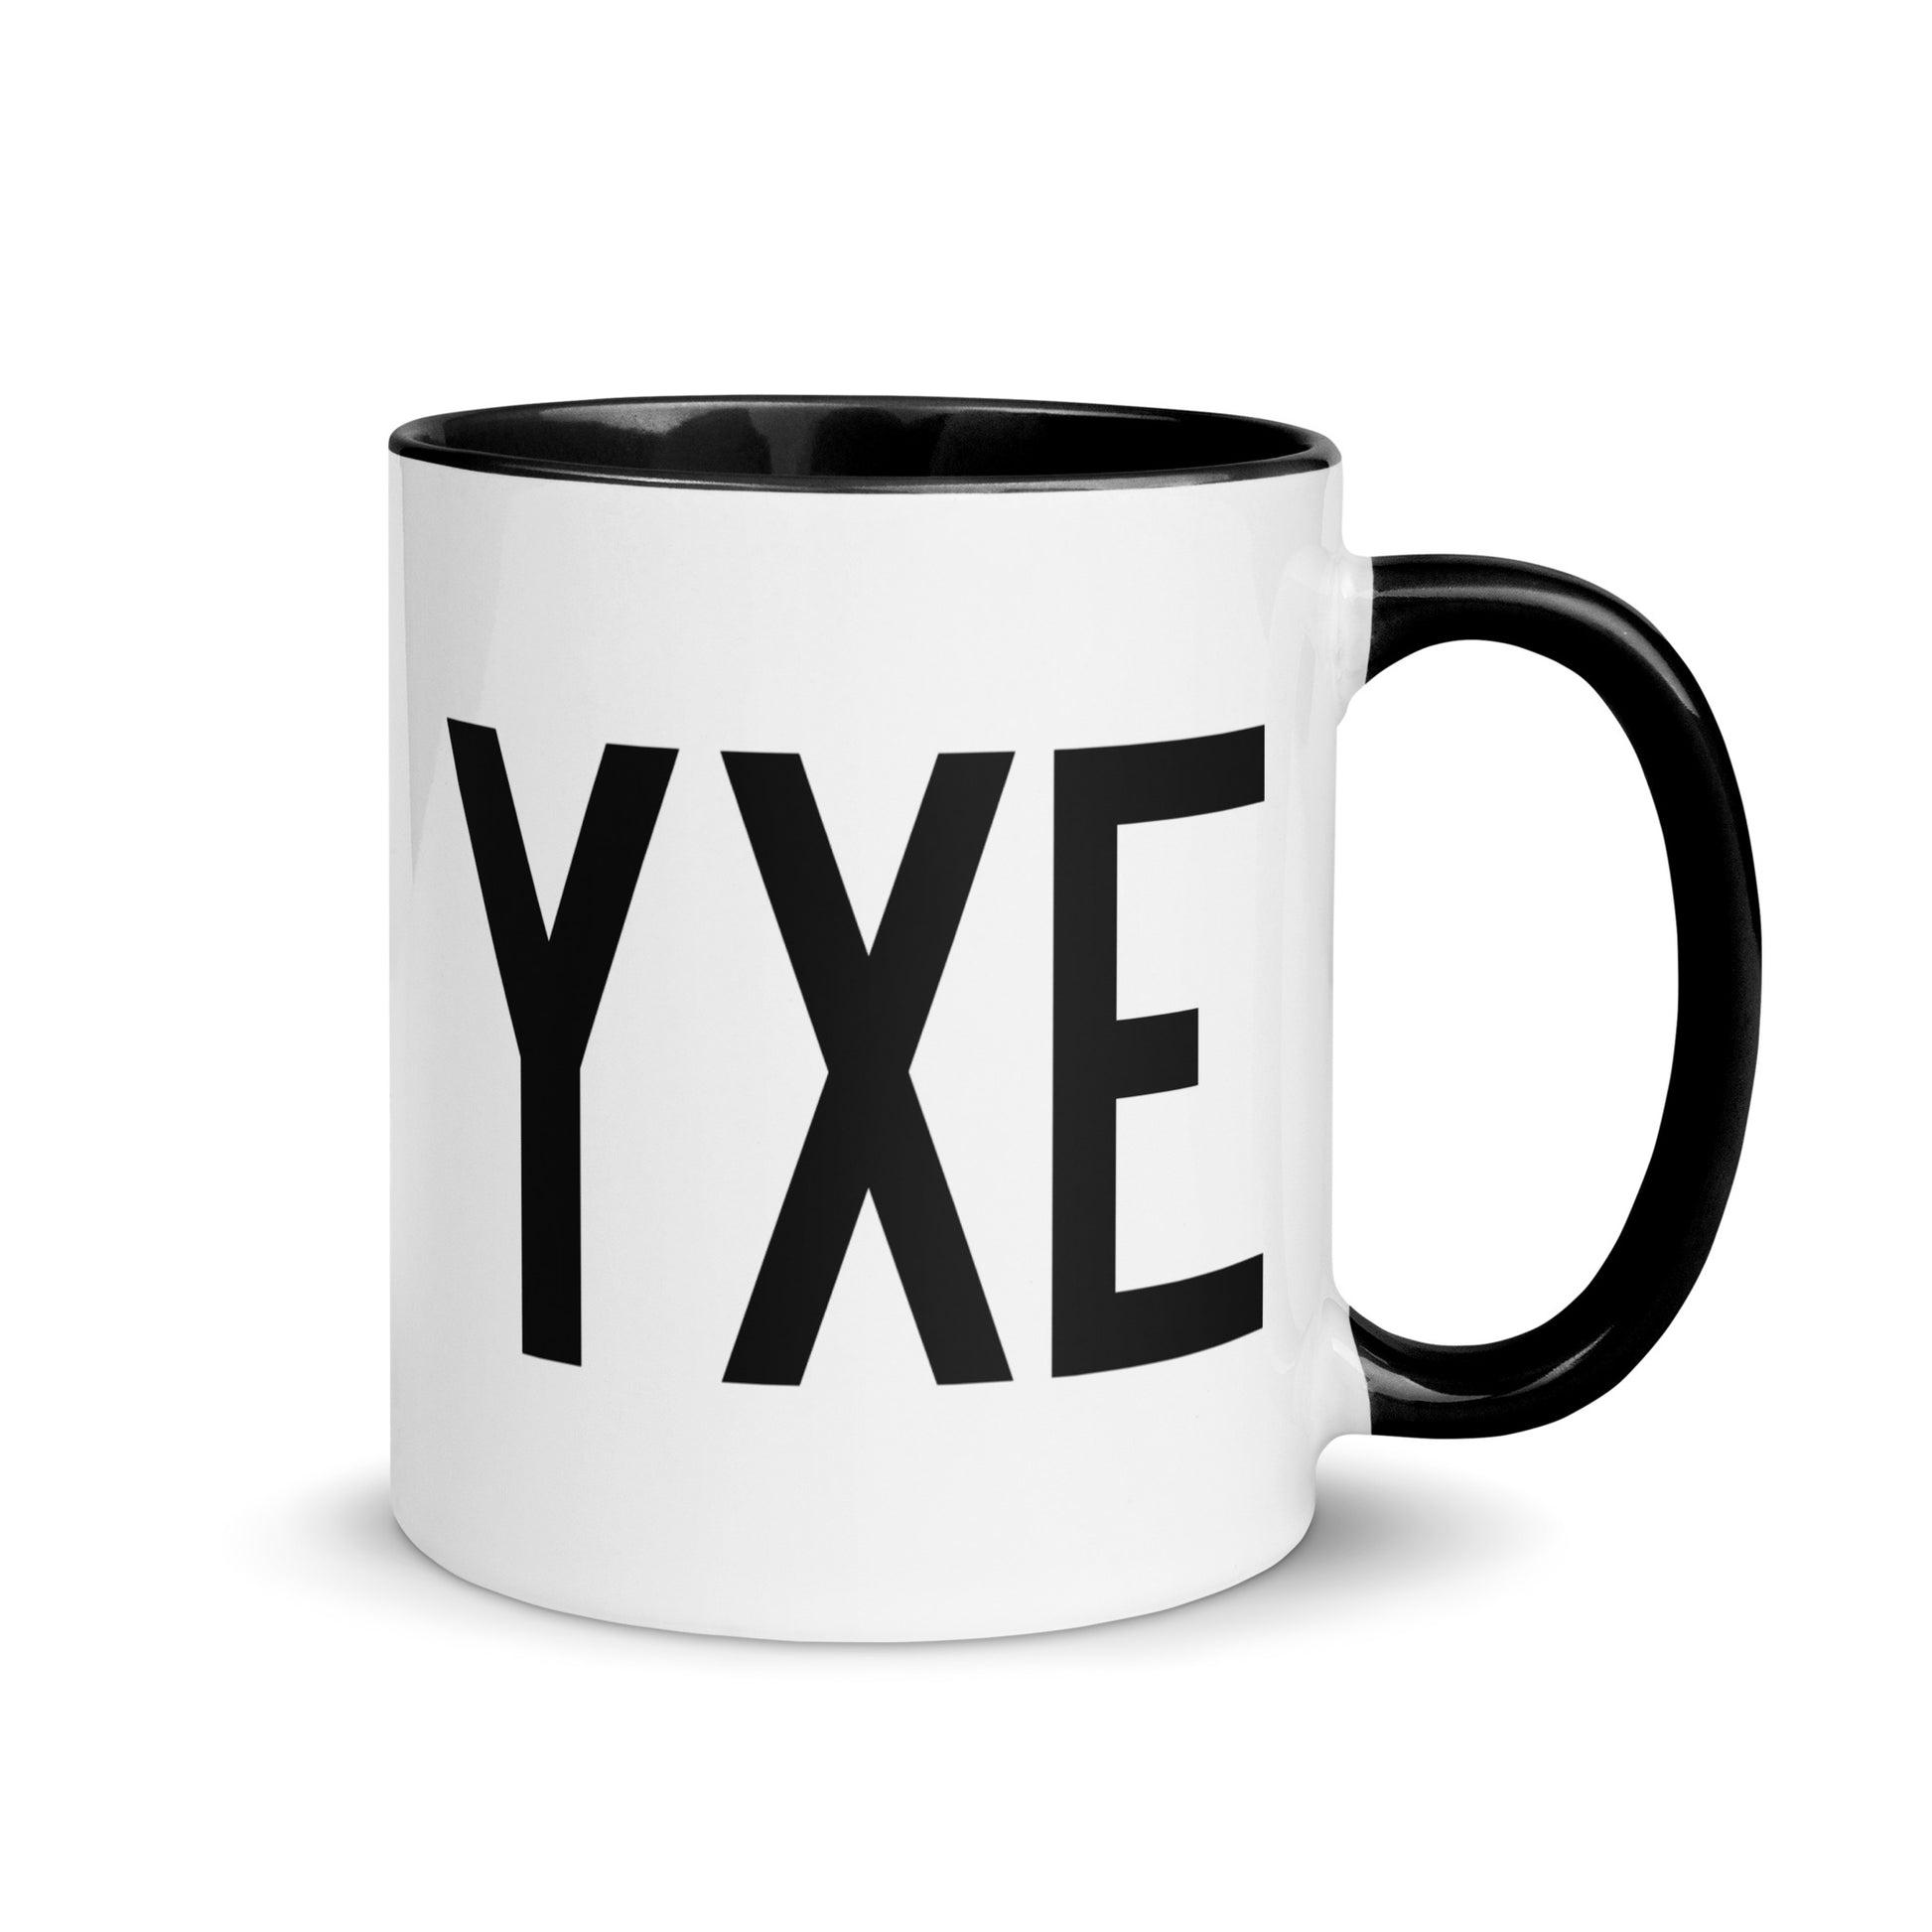 Airport Code Coffee Mug - Black • YXE Saskatoon • YHM Designs - Image 01